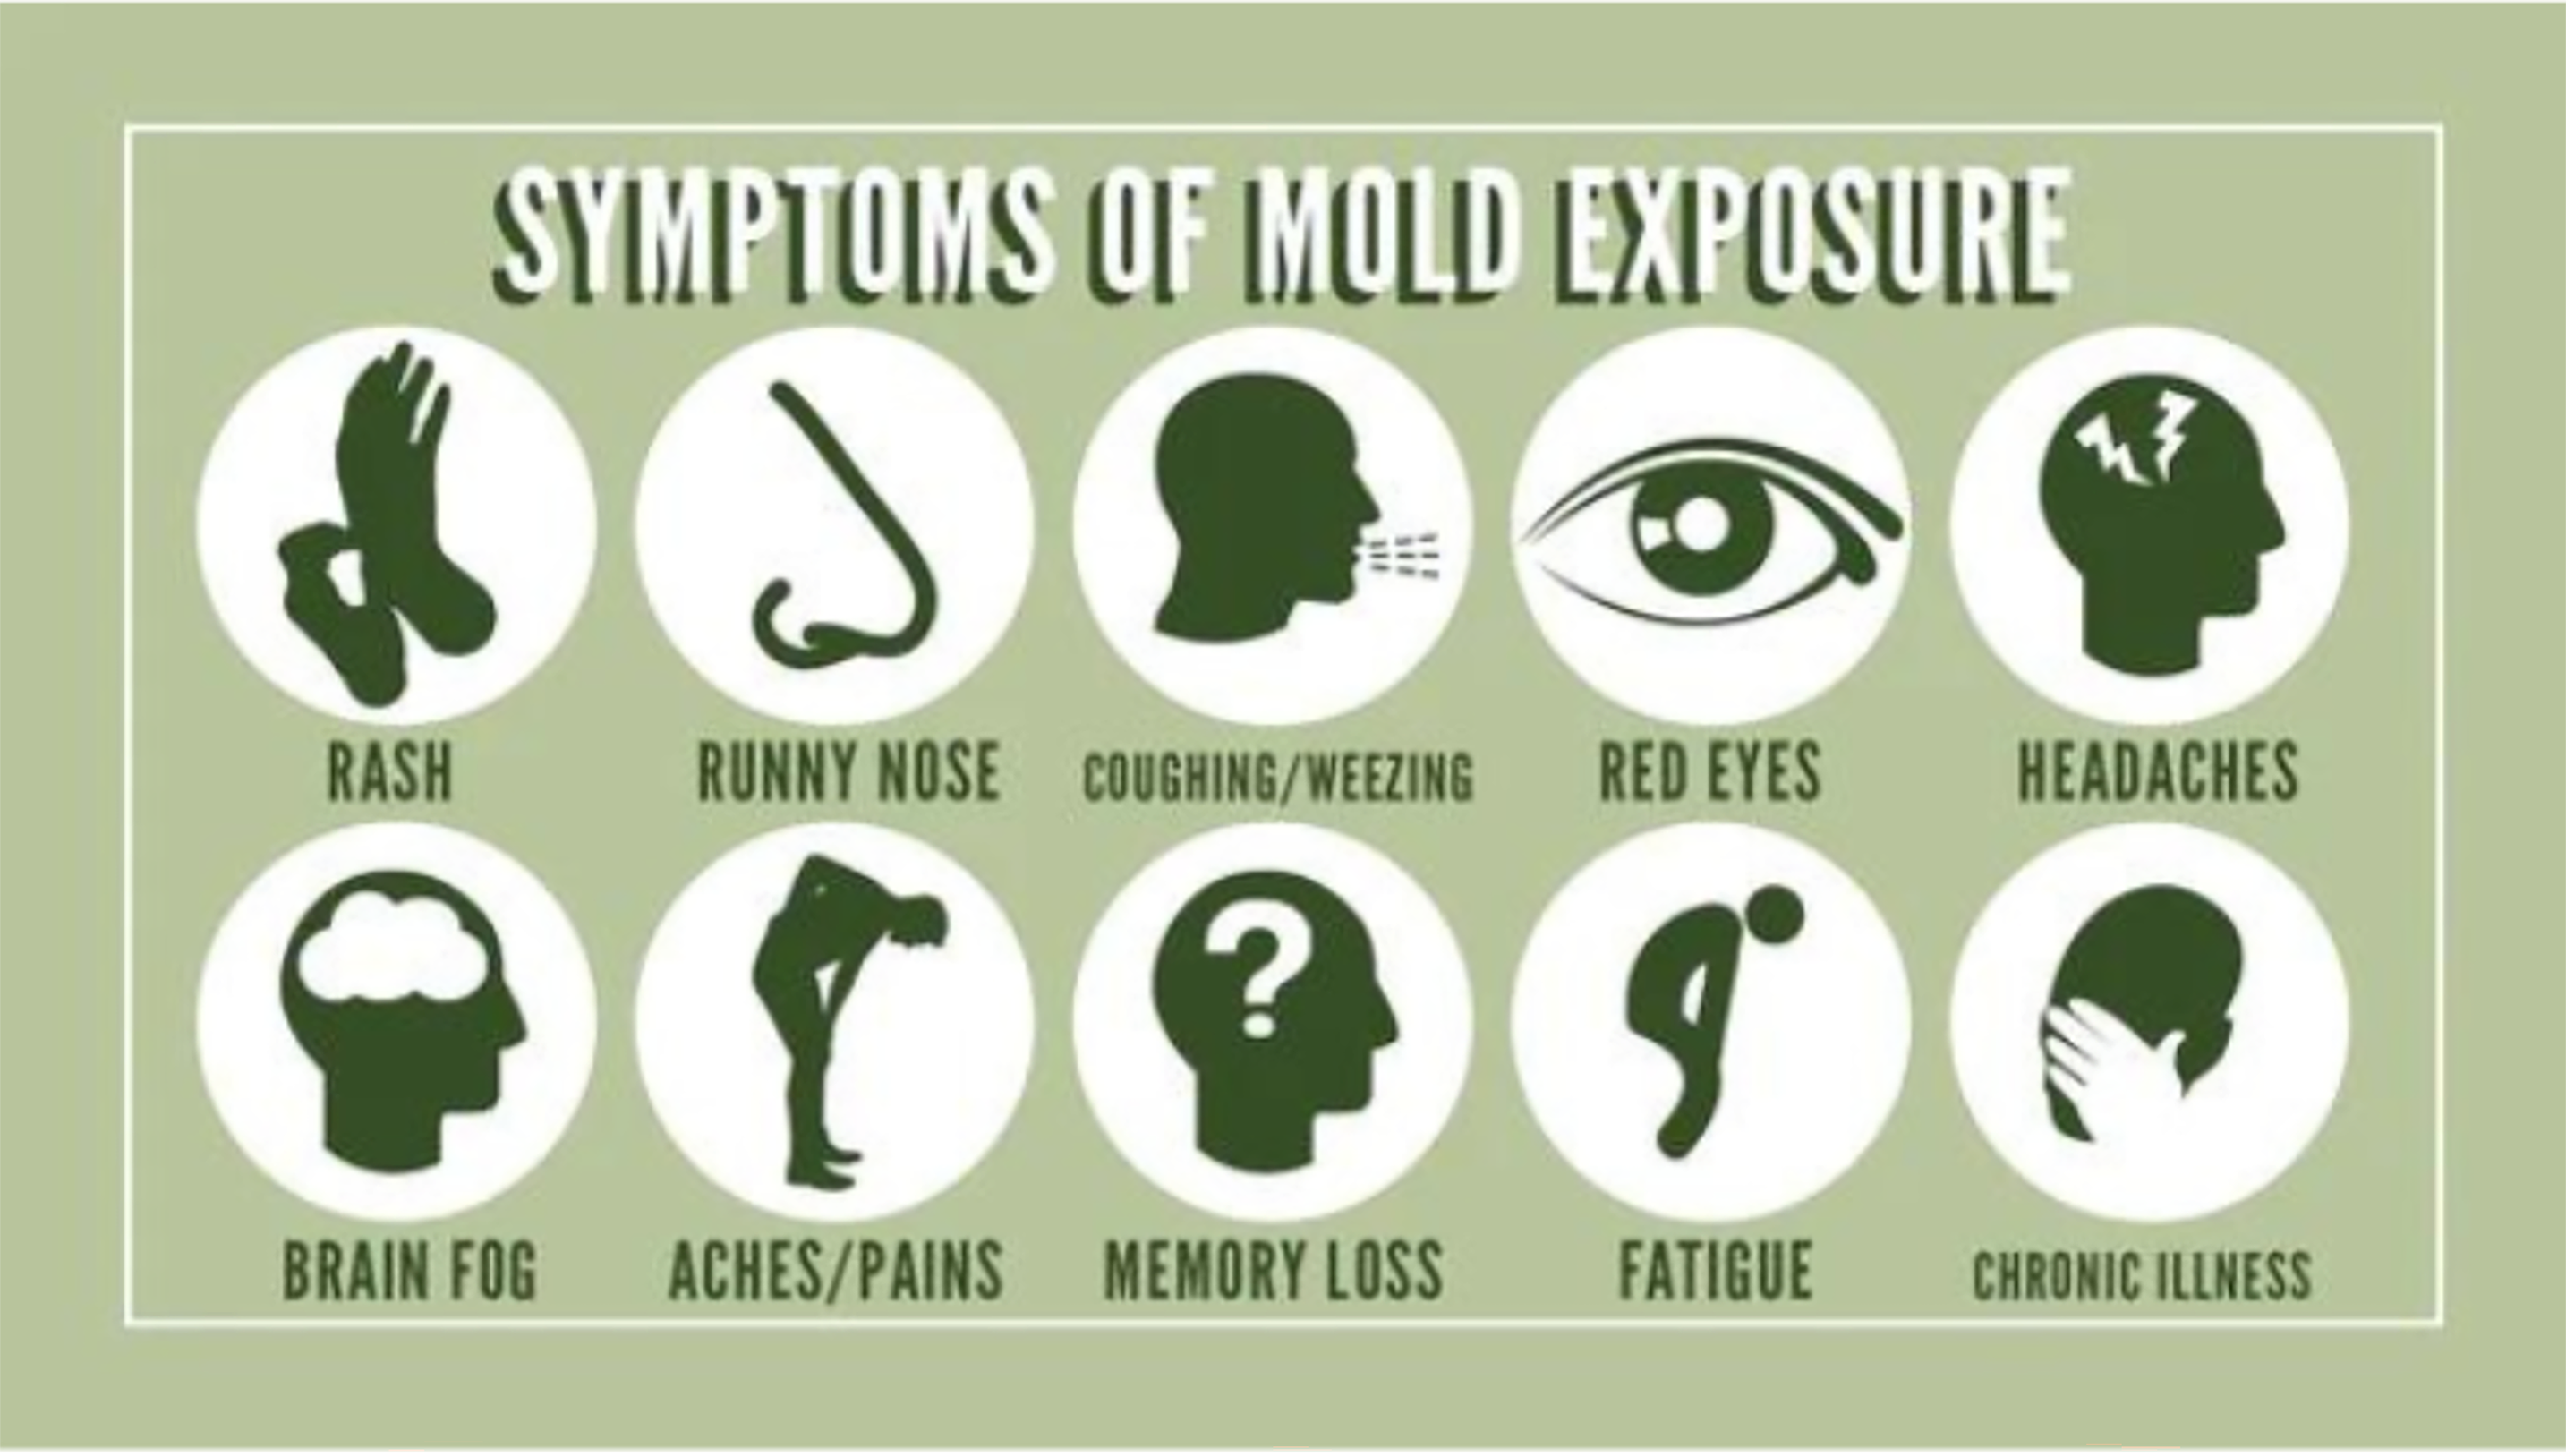 mold ingestion